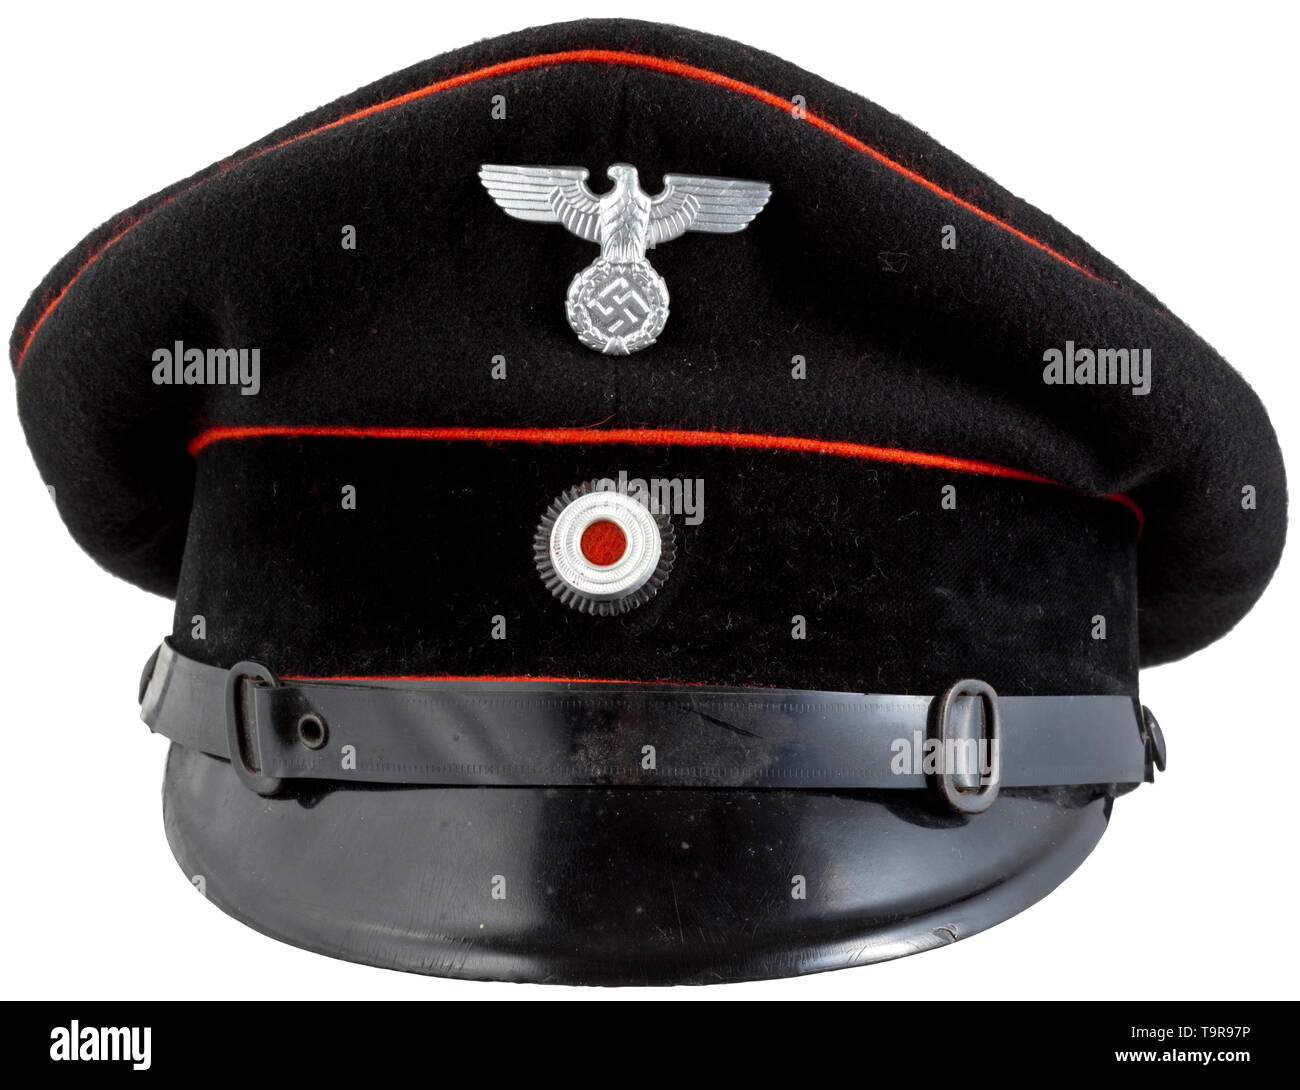 Un visor cap para los miembros de la brigada contra incendios adaptado modelo de Weimar, histórico histórico del siglo XX, Additional-Rights-Clearance-Info-Not-Available Foto de stock